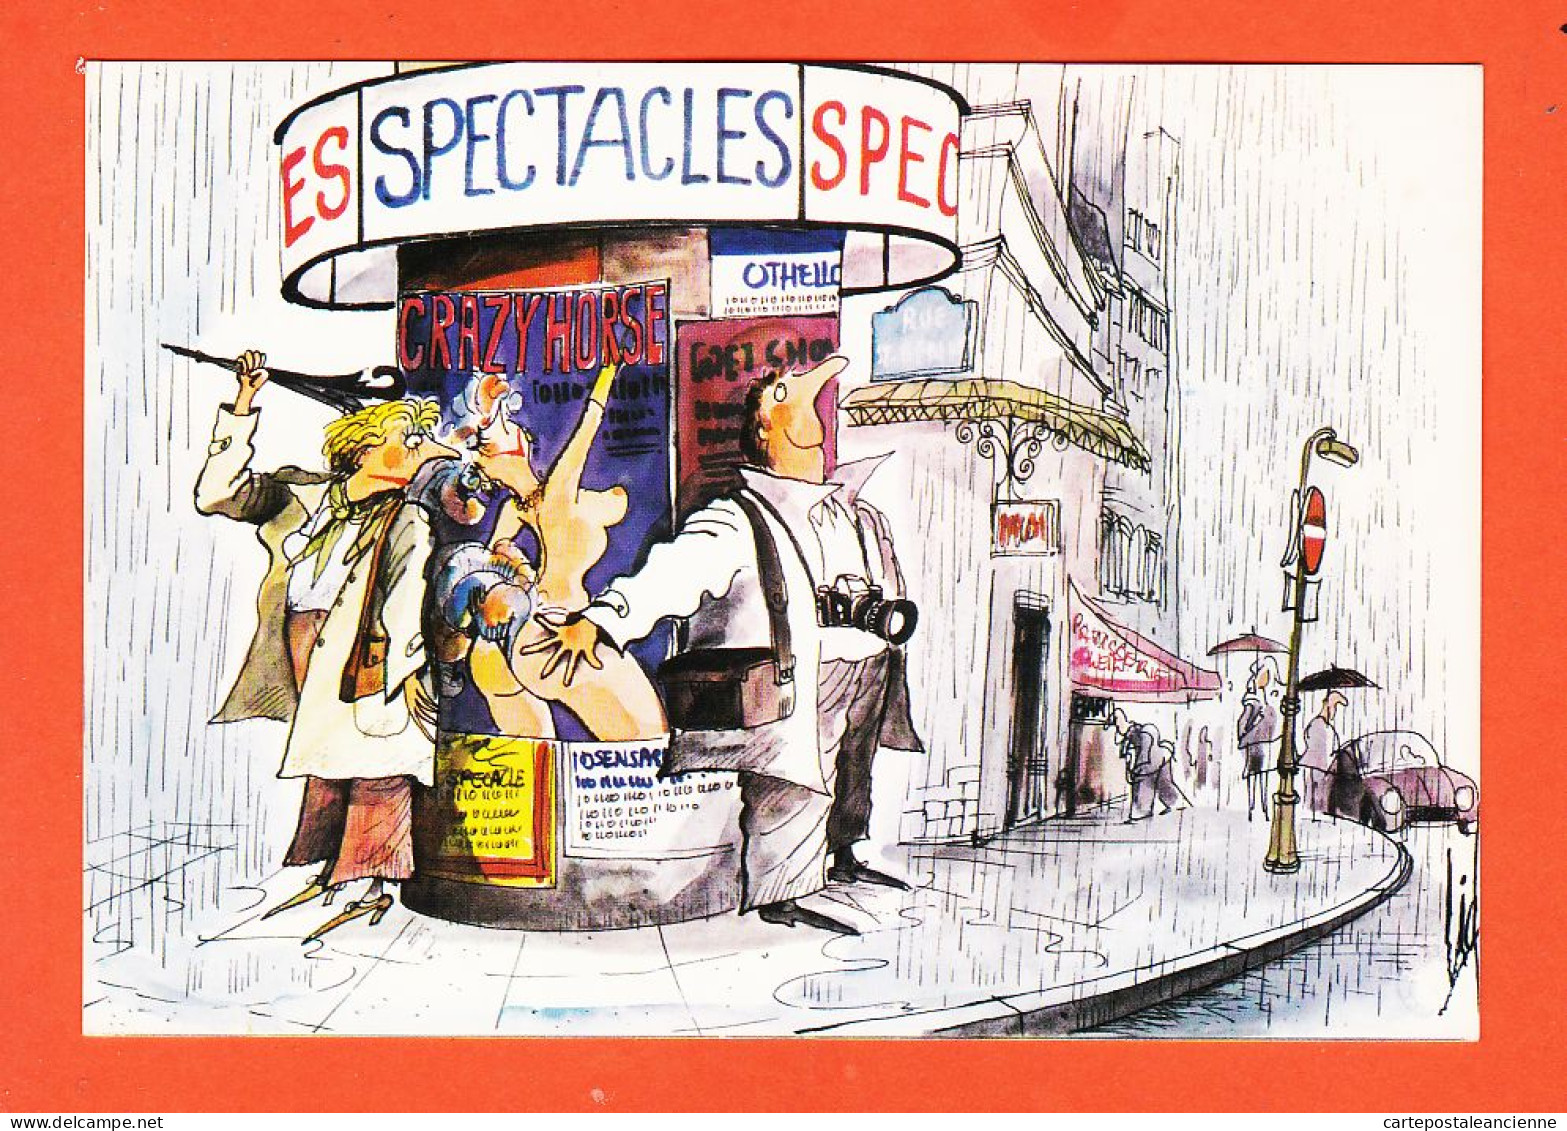 07921 ● Humour Touriste CRAZY HORSE Les Spectacles De PARIS Collection SMILING N°5 Edition CID GRATELO AMARODA  - Humour